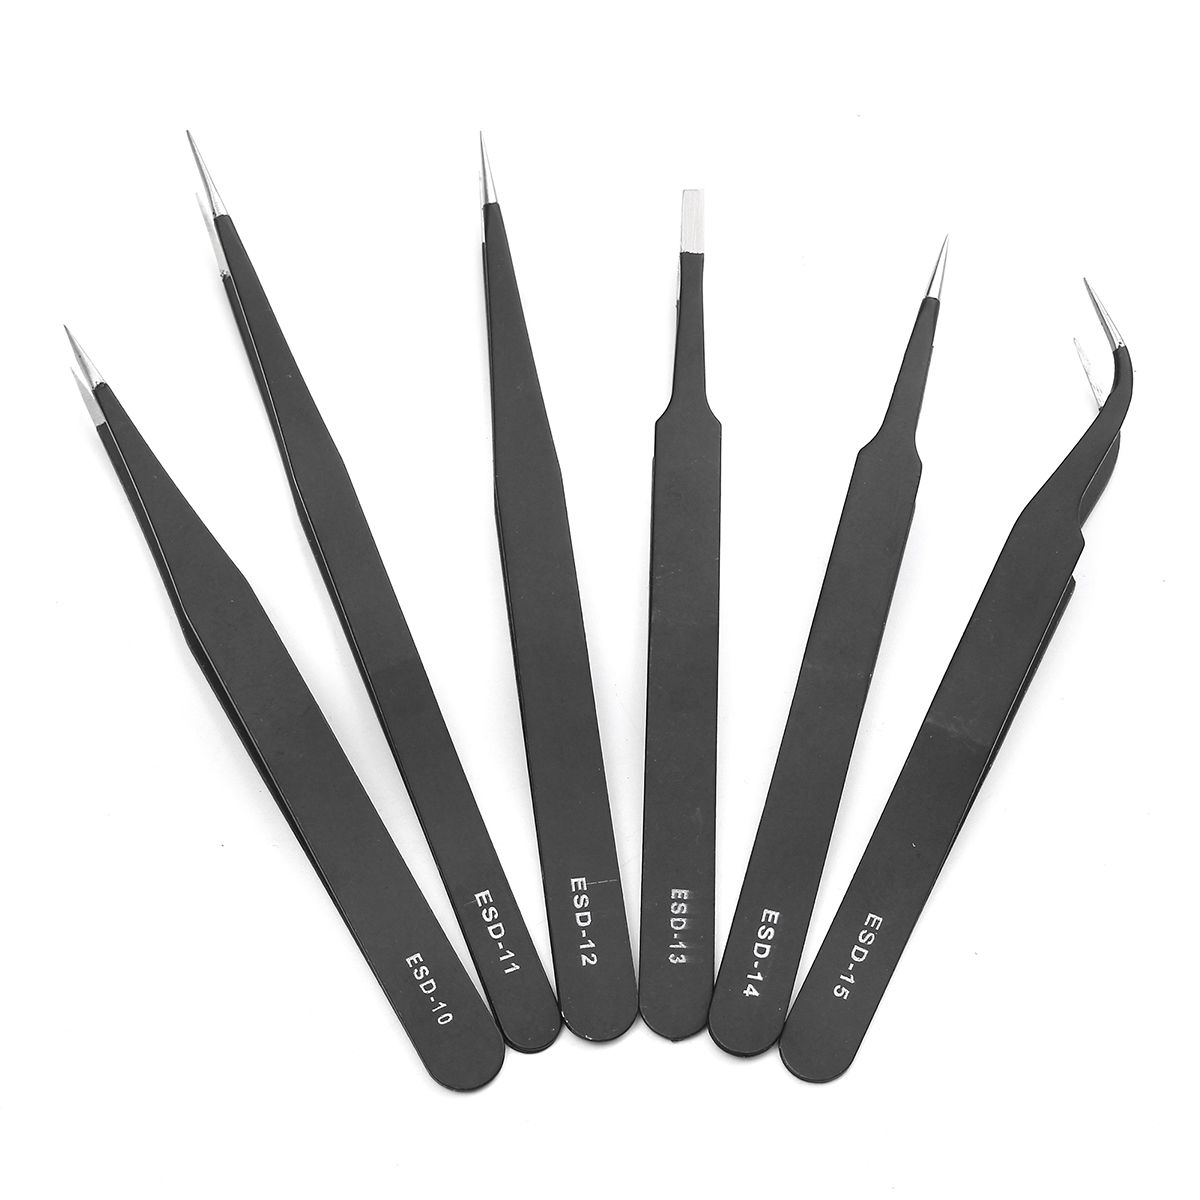 DANIU-6Pcs-Safe-Anti-static-Tweezers-Maintenance-Repair-Nippers-Forceps-Tools-Kit-ESD10-15-1190537